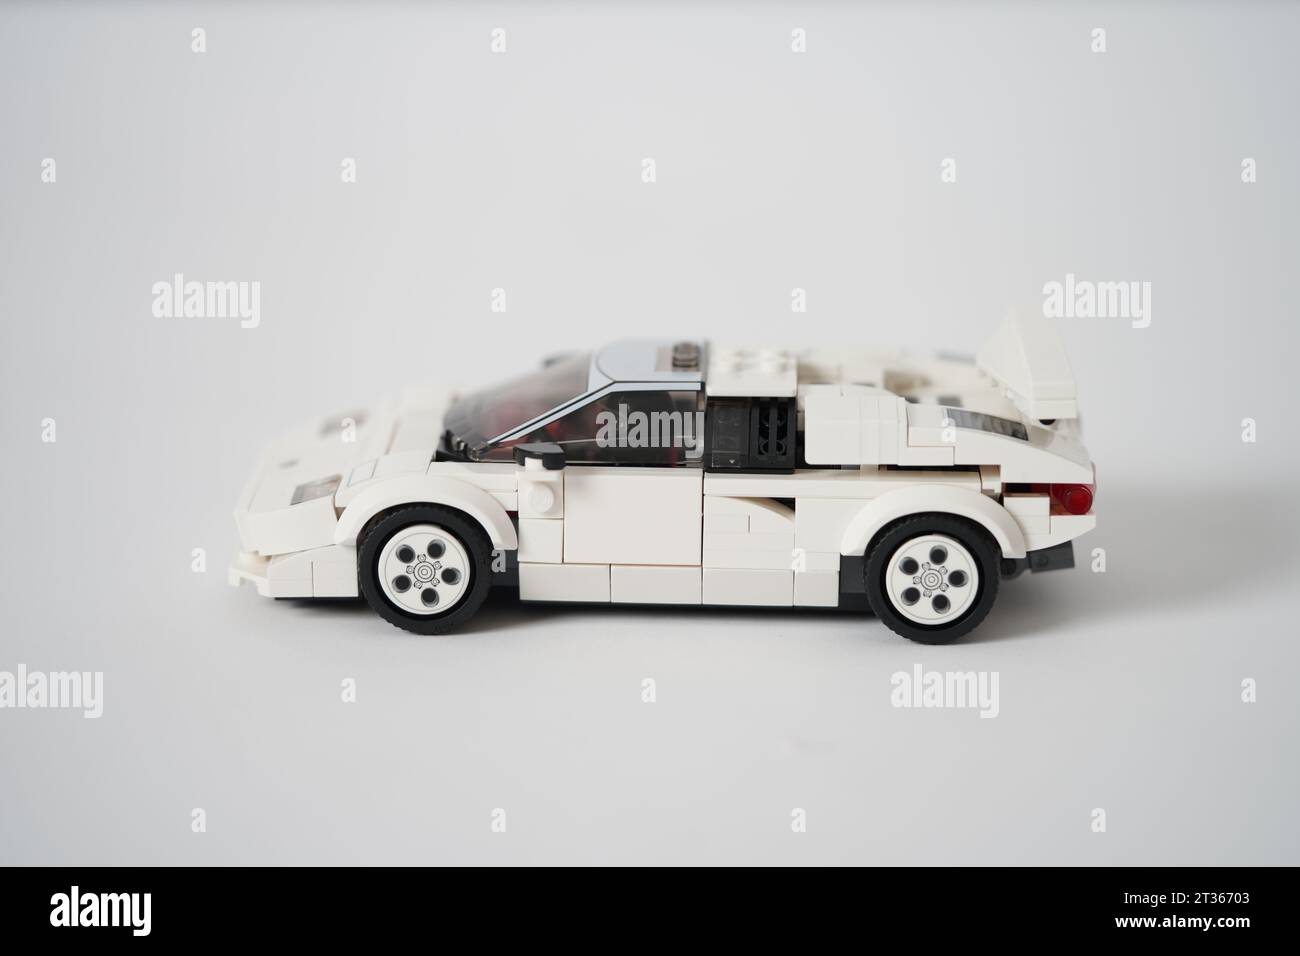 190+ Auto Lego Fotografías de stock, fotos e imágenes libres de derechos -  iStock